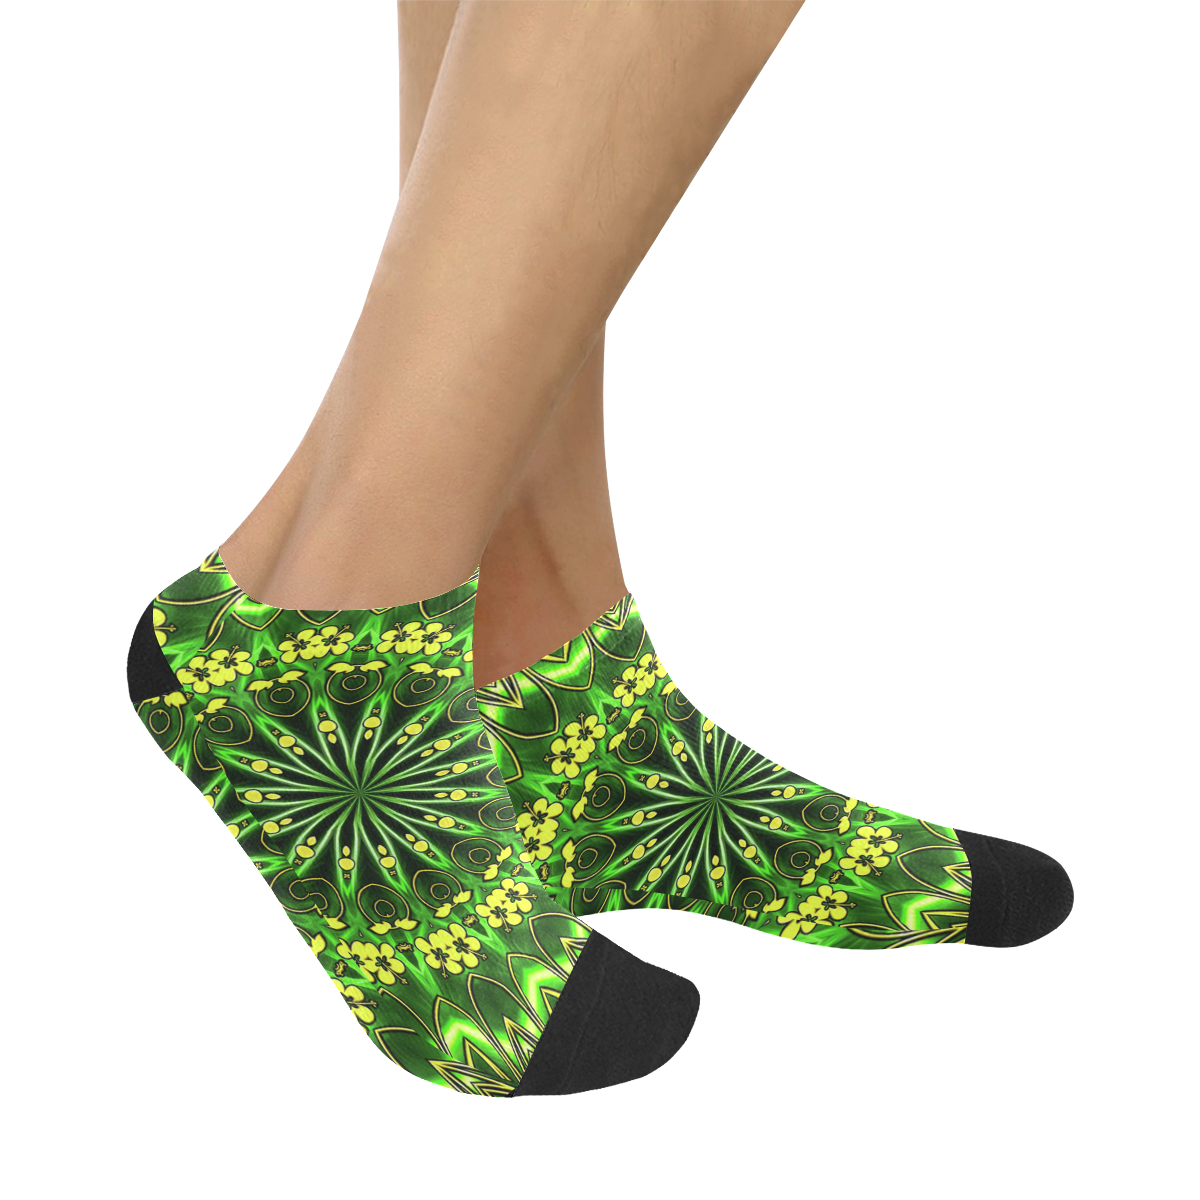 MANDALA GARDEN OF EDEN Women's Ankle Socks